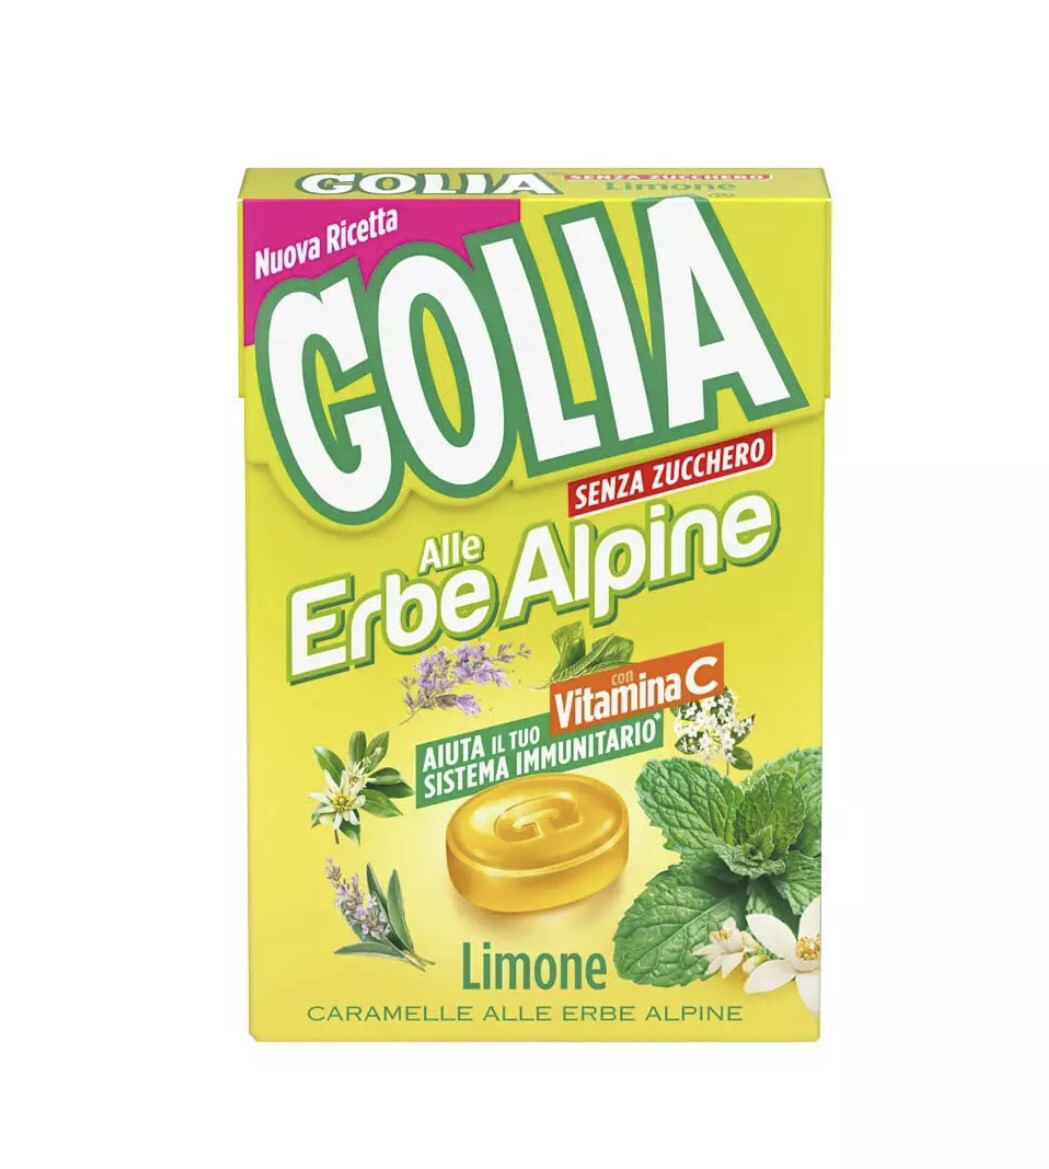 GOLIA Erbe Alpine Limone Box 49gr.